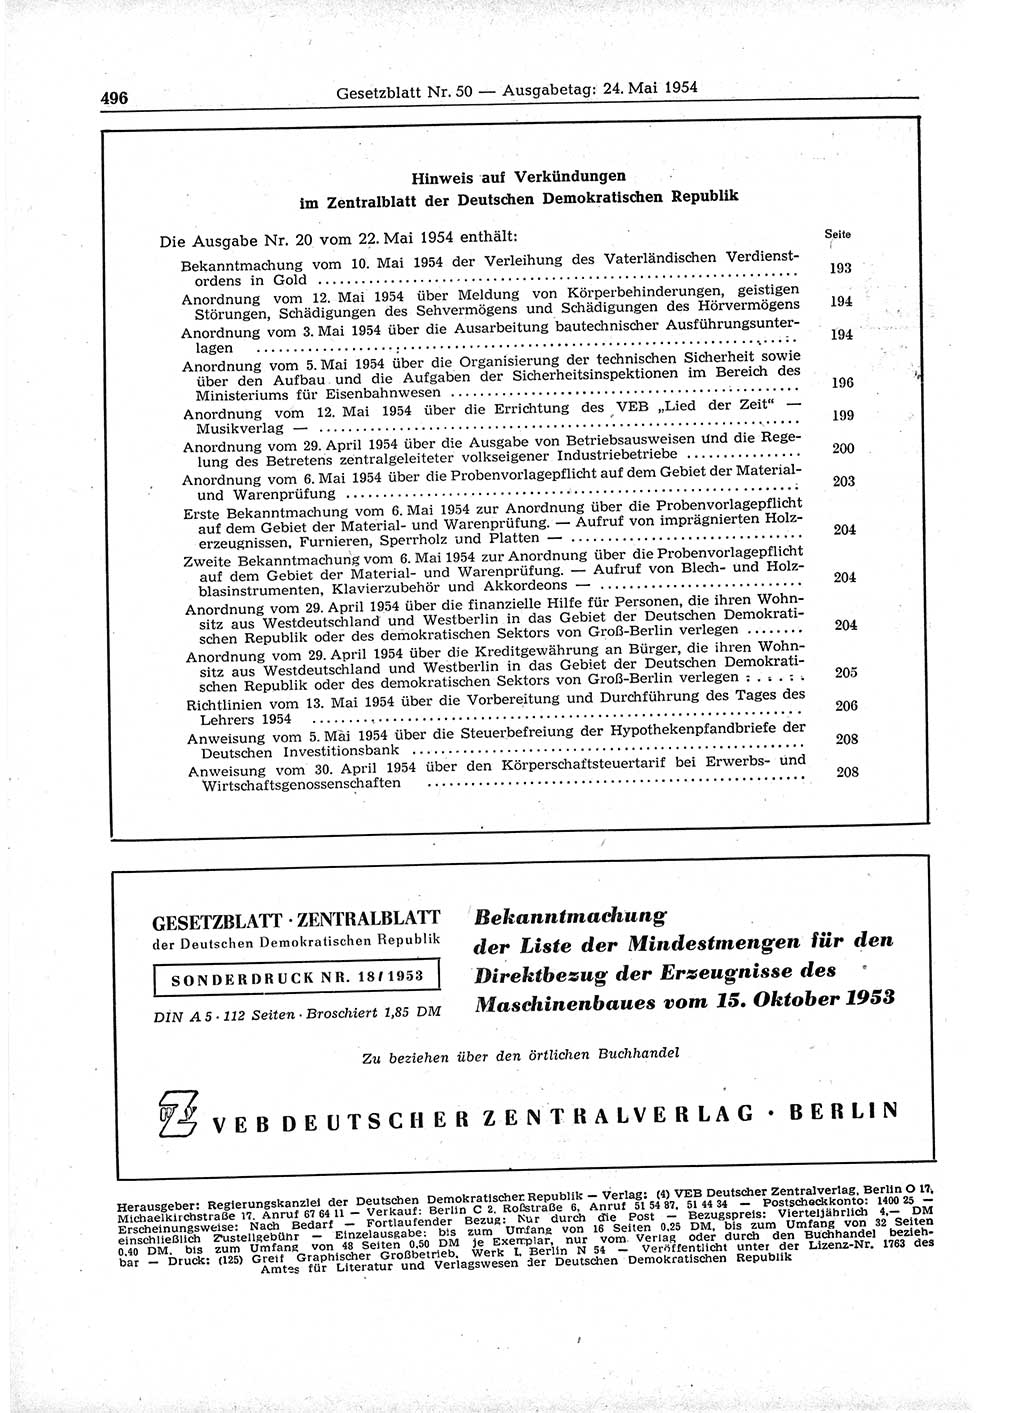 Gesetzblatt (GBl.) der Deutschen Demokratischen Republik (DDR) 1954, Seite 496 (GBl. DDR 1954, S. 496)